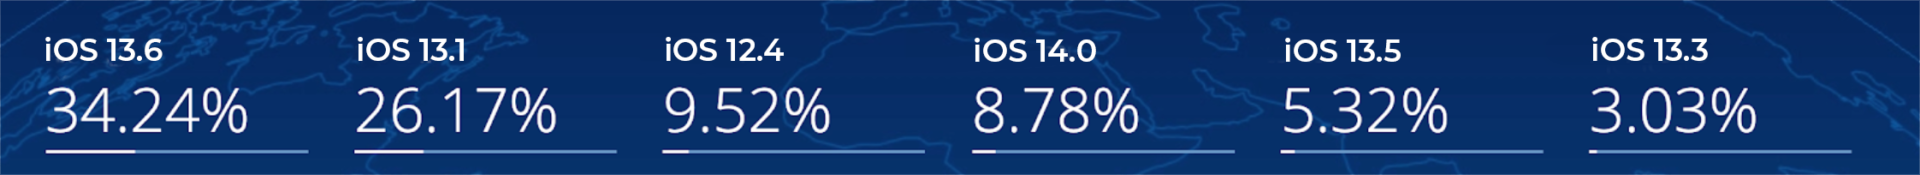 iOS 13.6 34.24% iOS 13.1 26.17% iOS 12.4 9.52% iOS 14.0 8.78% iOS 13.5 5.32% iOS 13.3 3.03%